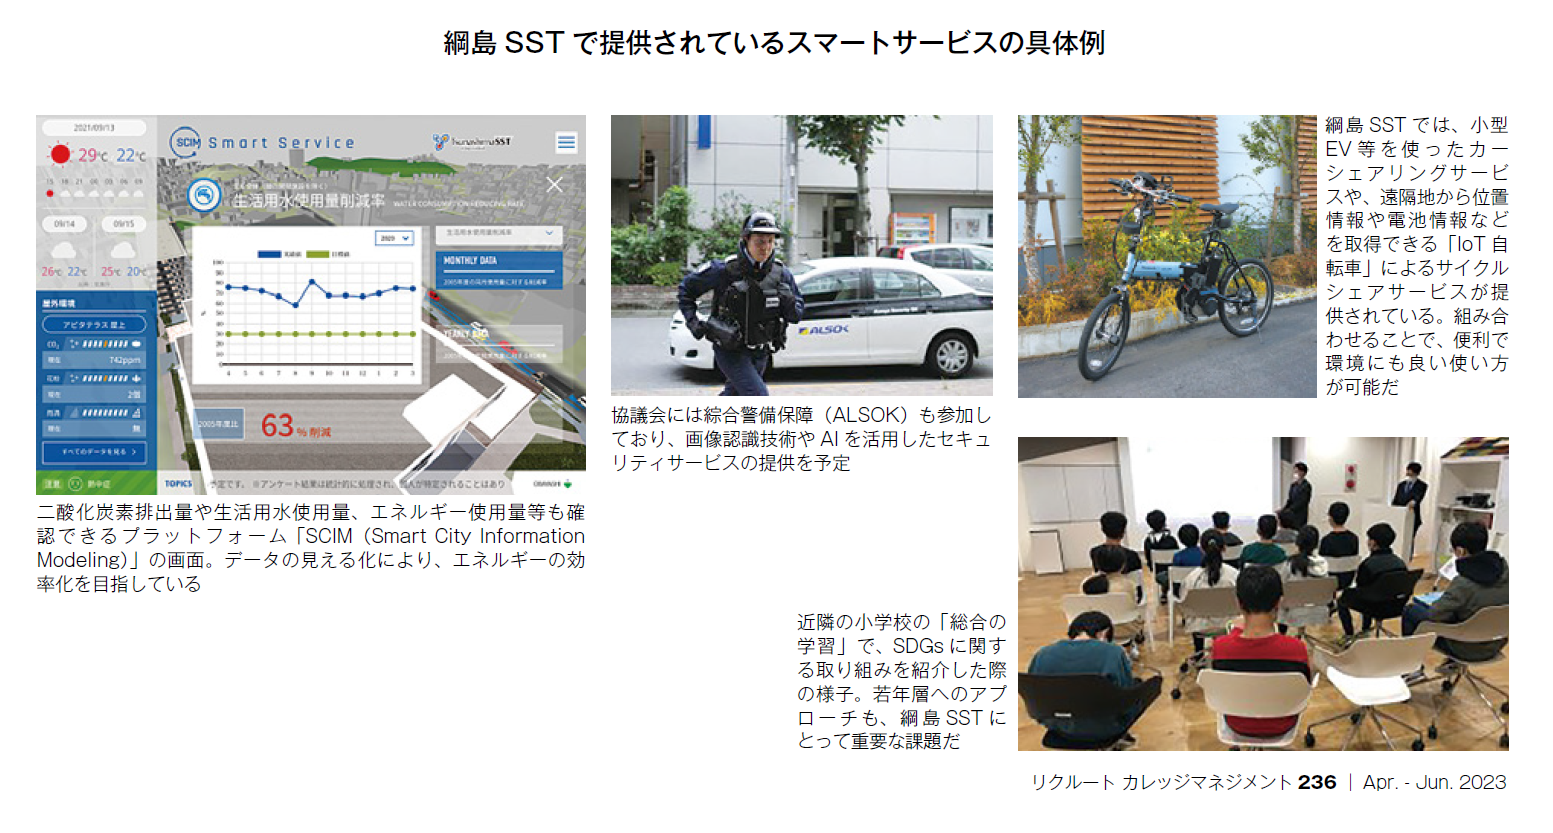 綱島SST で提供されているスマートサービスの具体例